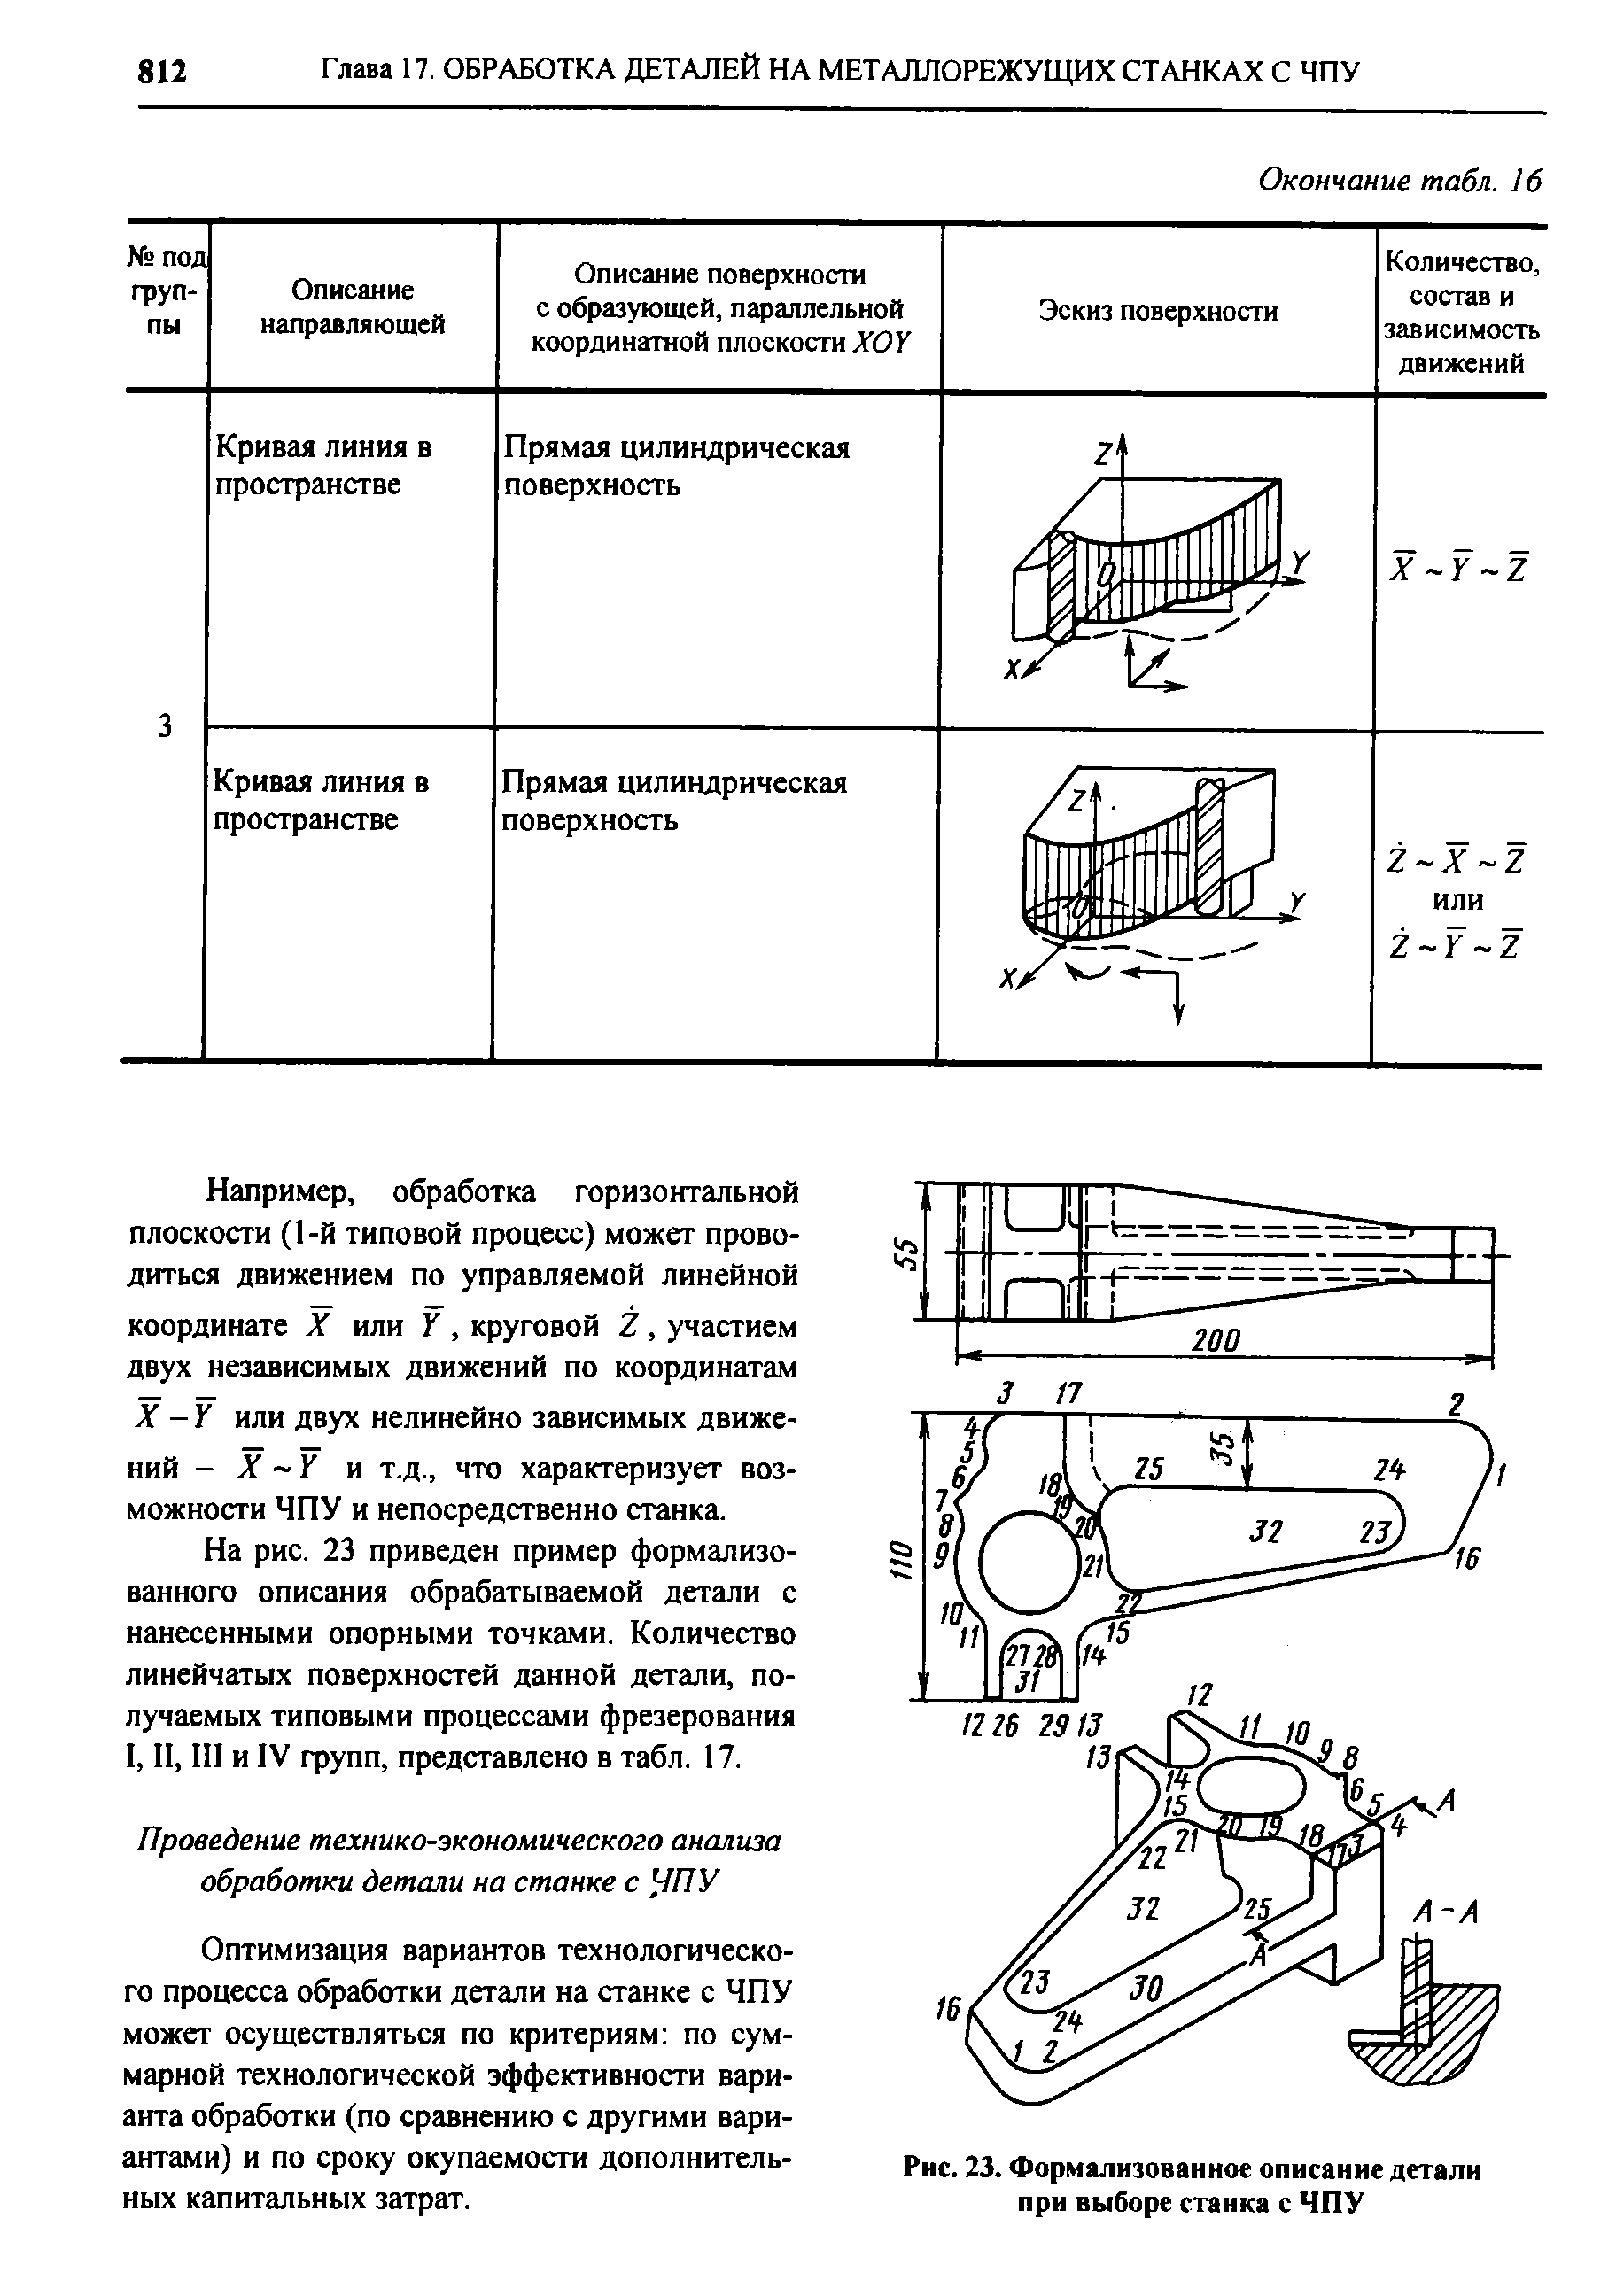 Рис. 23. Формализованное описание детали при выборе станка с ЧПУ
